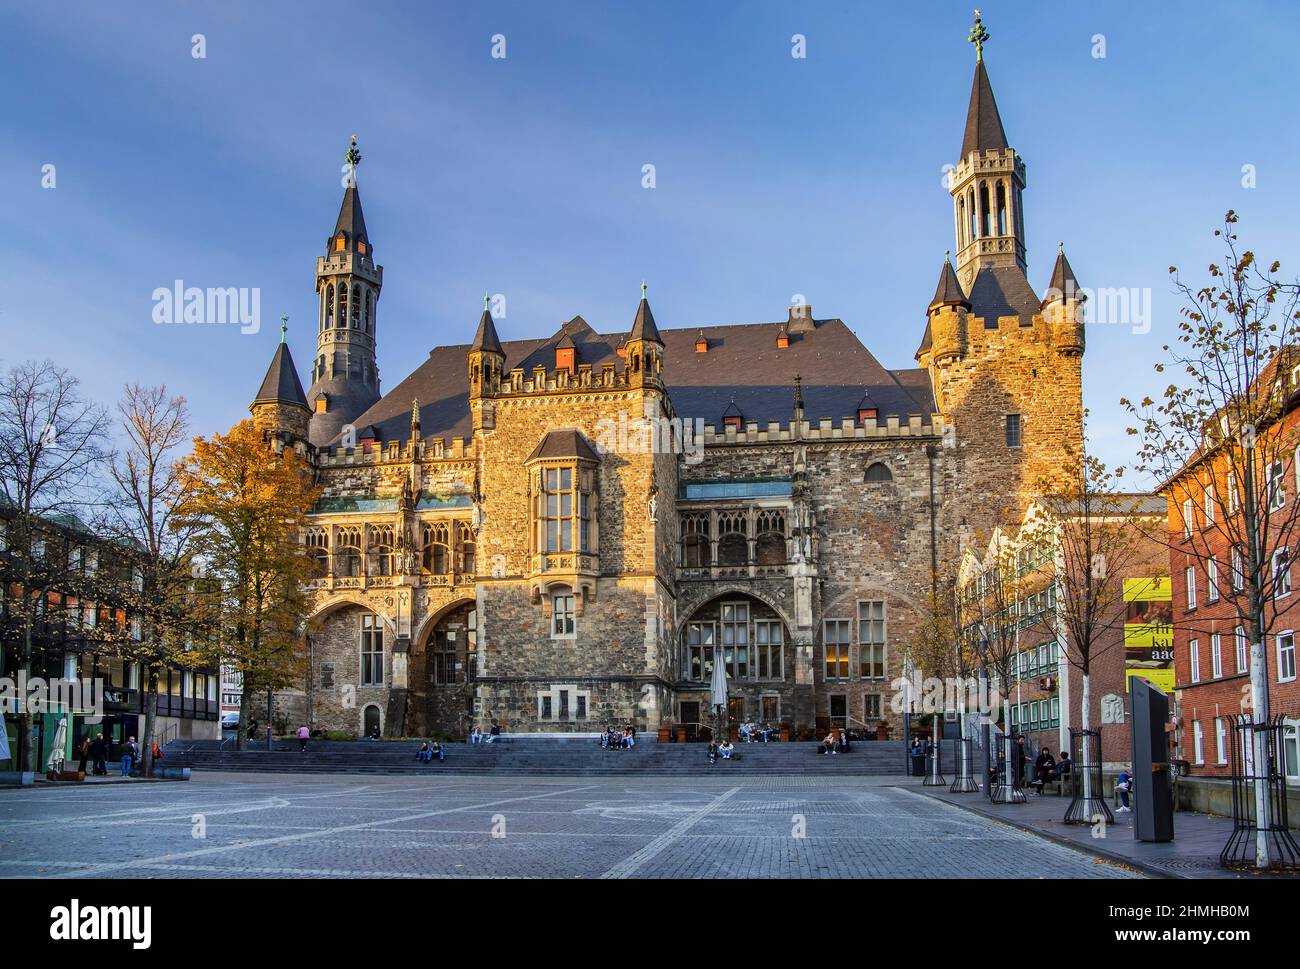 Katschhof mit Südblick vom gotischen Rathaus im Abendlicht, Aachen, Nordrhein-Westfalen, Deutschland Stockfoto